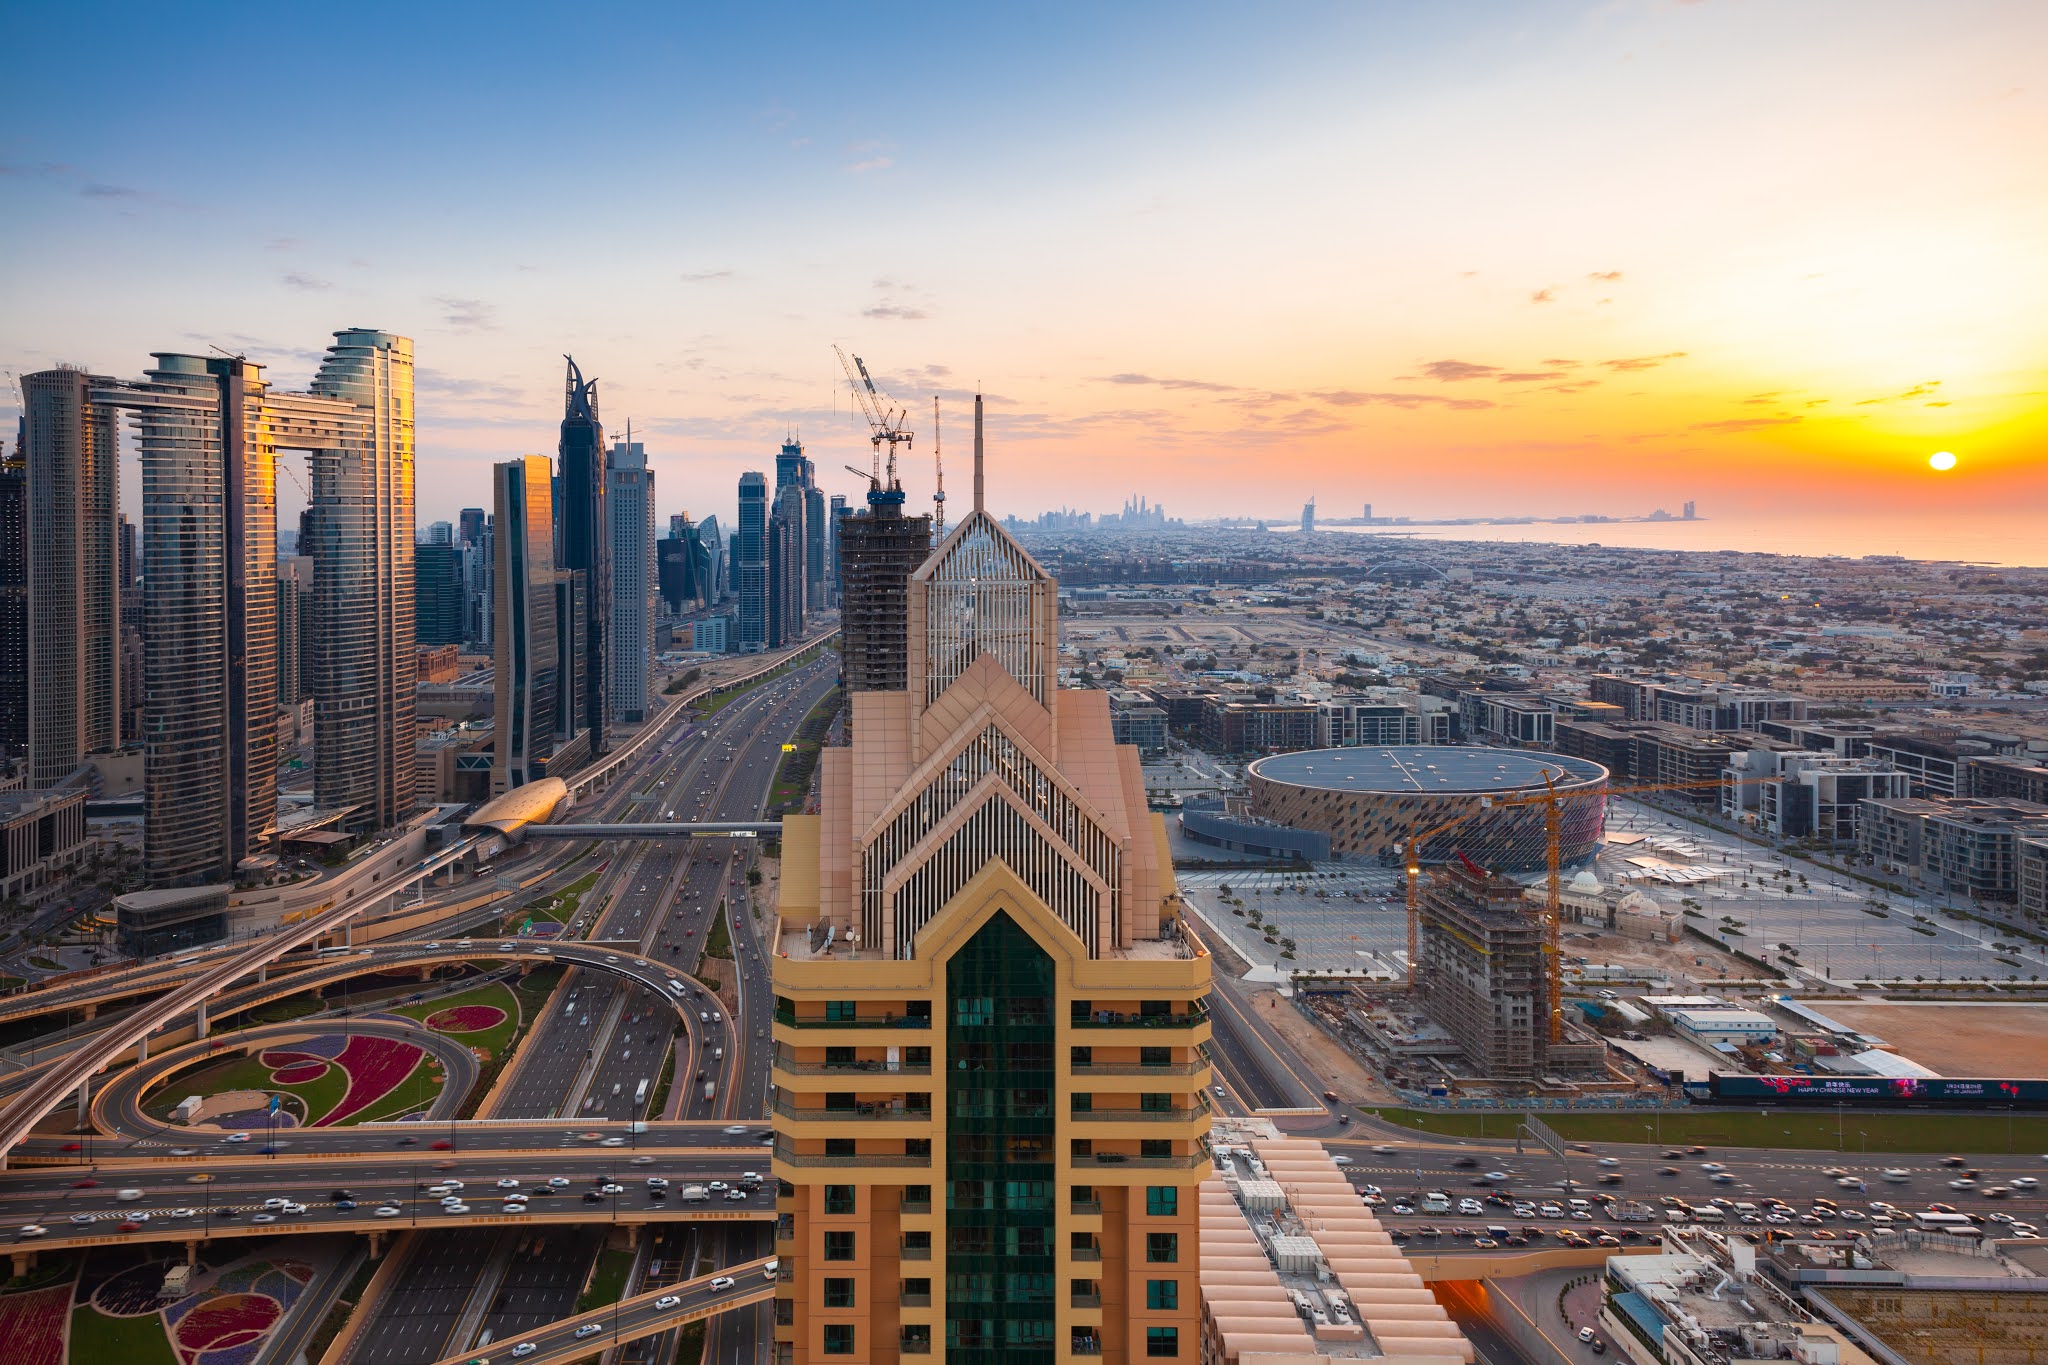 هاسبي للتكنولوجيا العقارية تتوسع في مدينة دبي بعد جولة تمويل تأسيسية